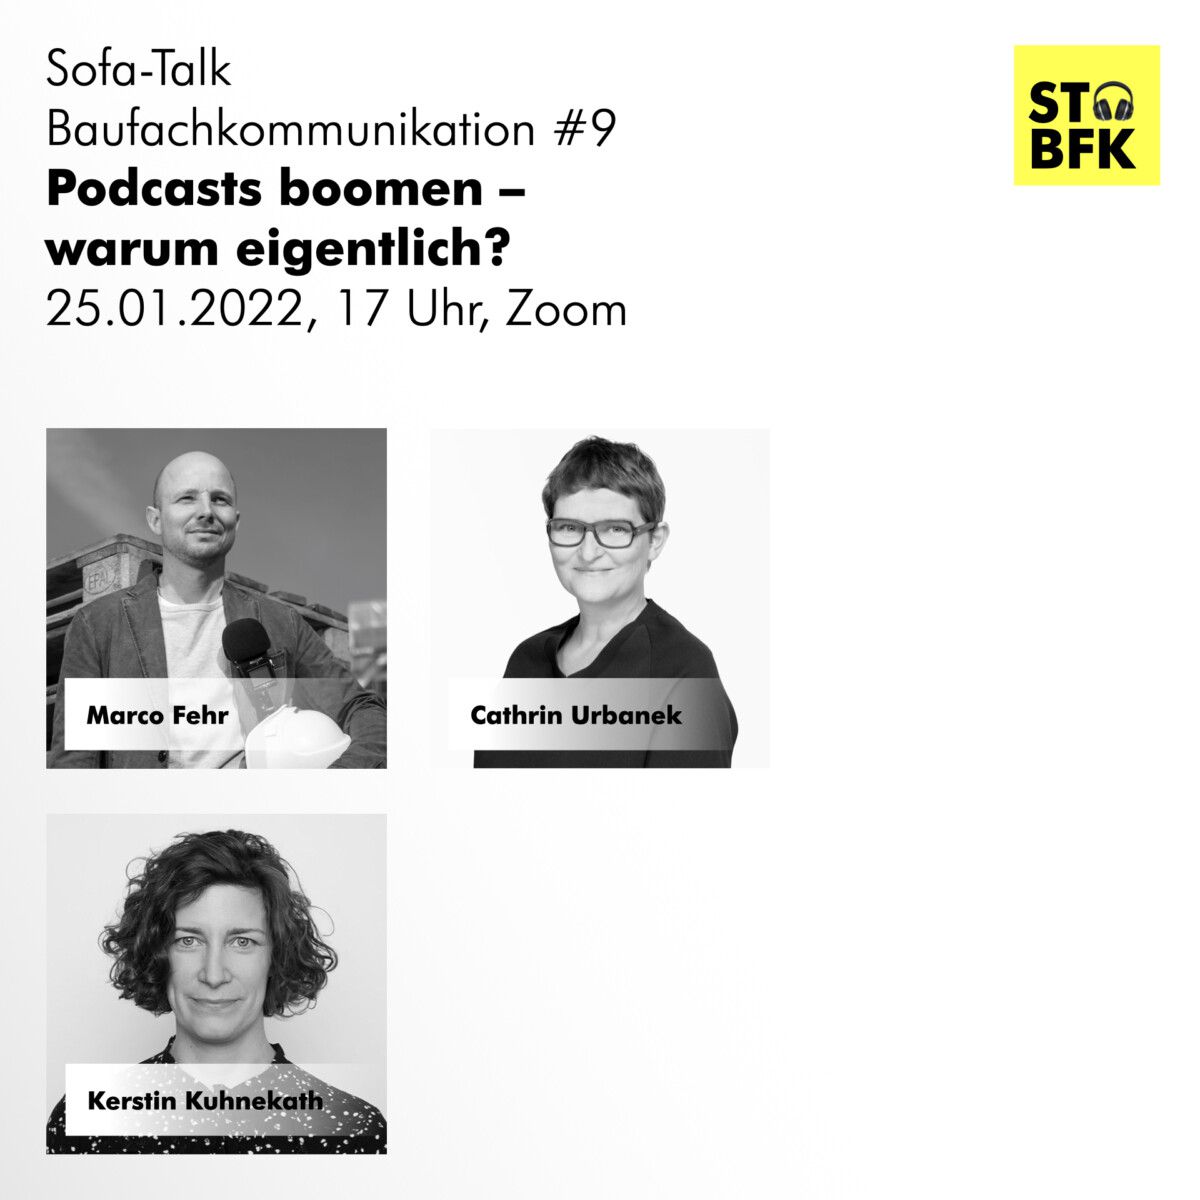 Sofa-Talk Baufachkommunikation am 25.01.2022: „Podcasts boomen, warum eigentlich?“